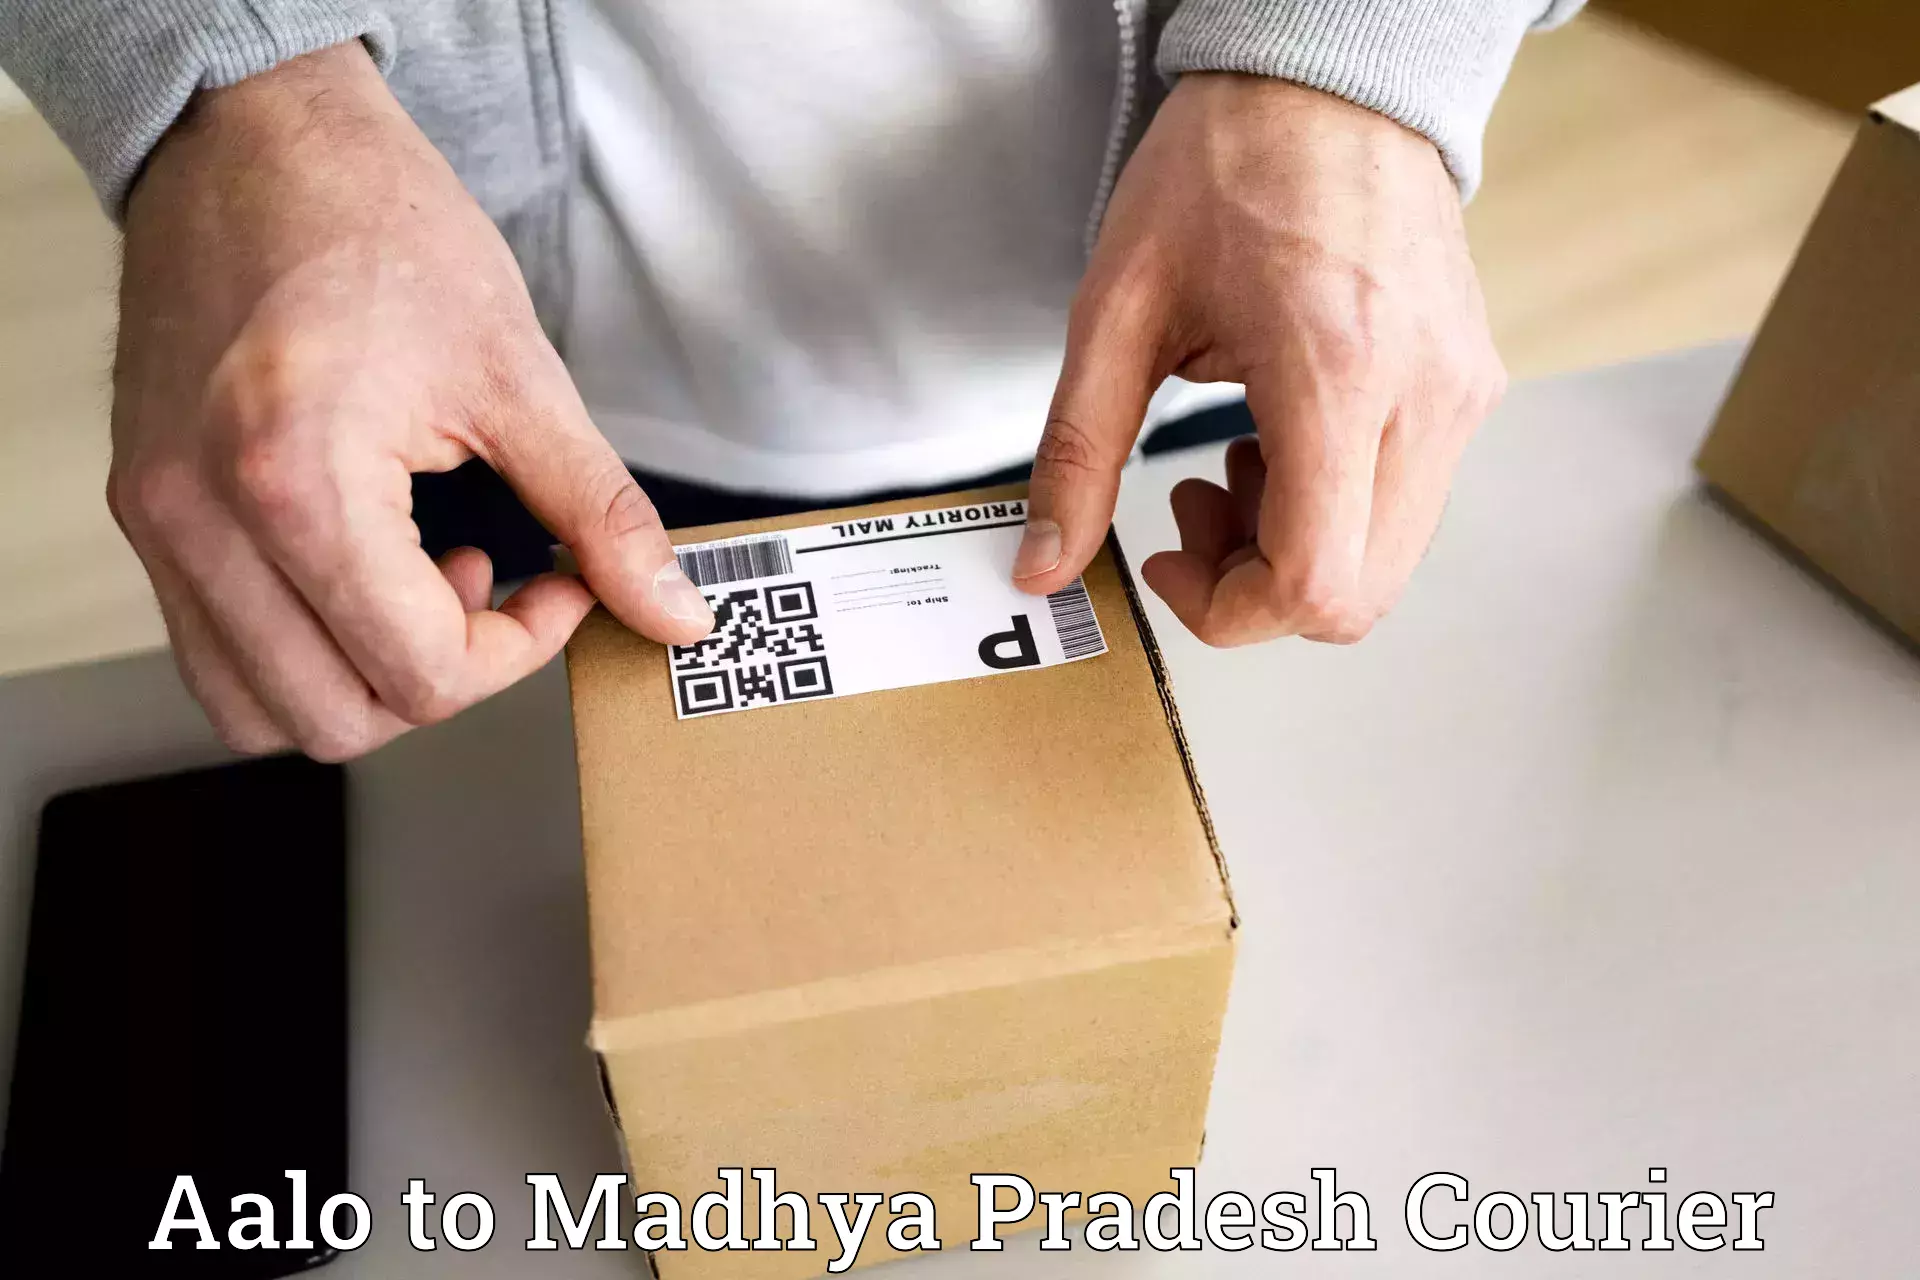 Full-service courier options Aalo to Vijayraghavgarh